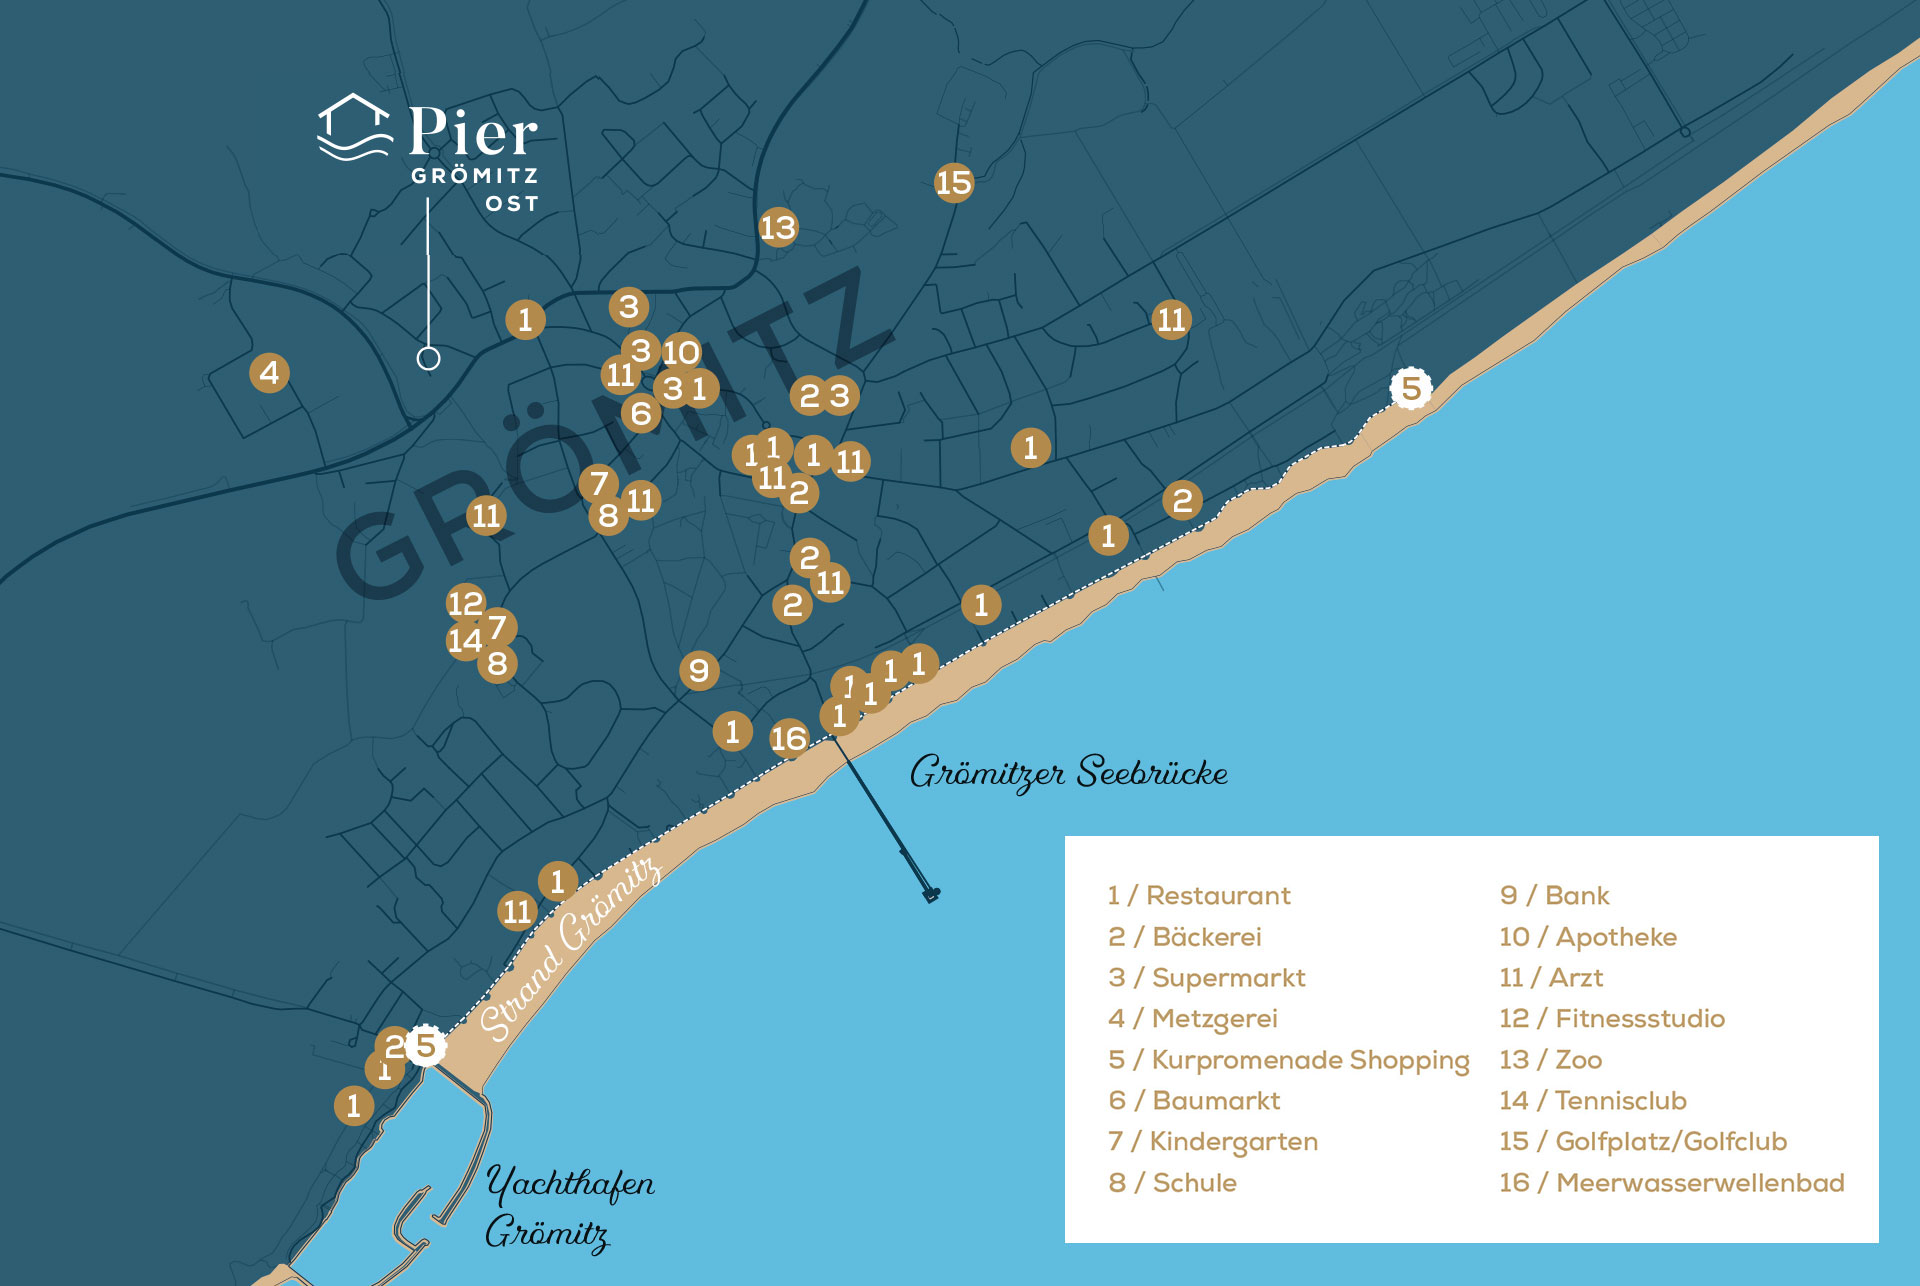 Leben an der Lübecker Bucht Karte | Pier Grömitz Ost